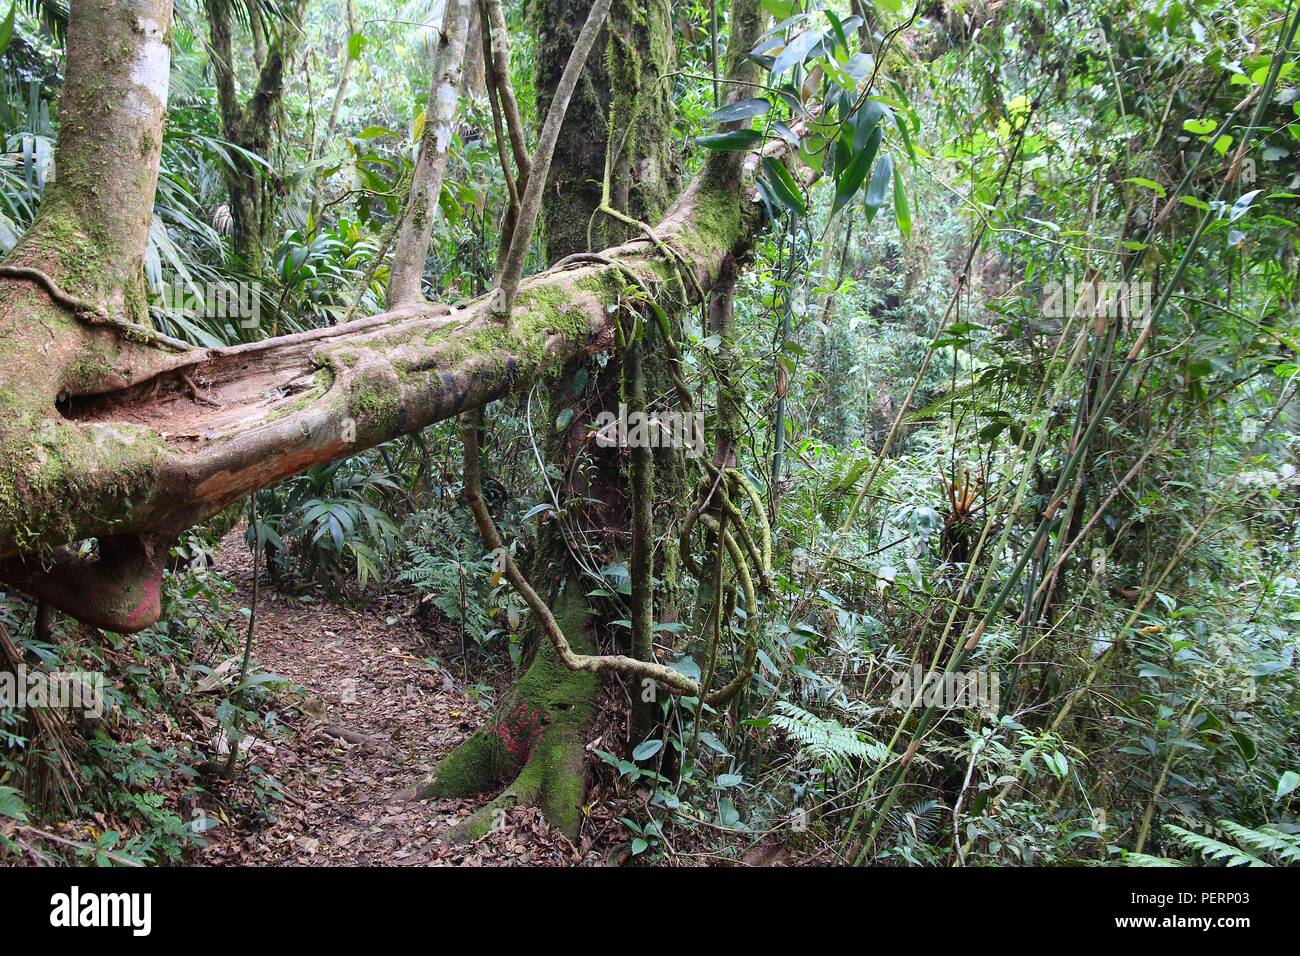 Brasile - jungle sentiero escursionistico a Mata Atlantica (foresta pluviale atlantica biome) nella Serra dos Orgaos National Park (stato di Rio de Janeiro). Foto Stock